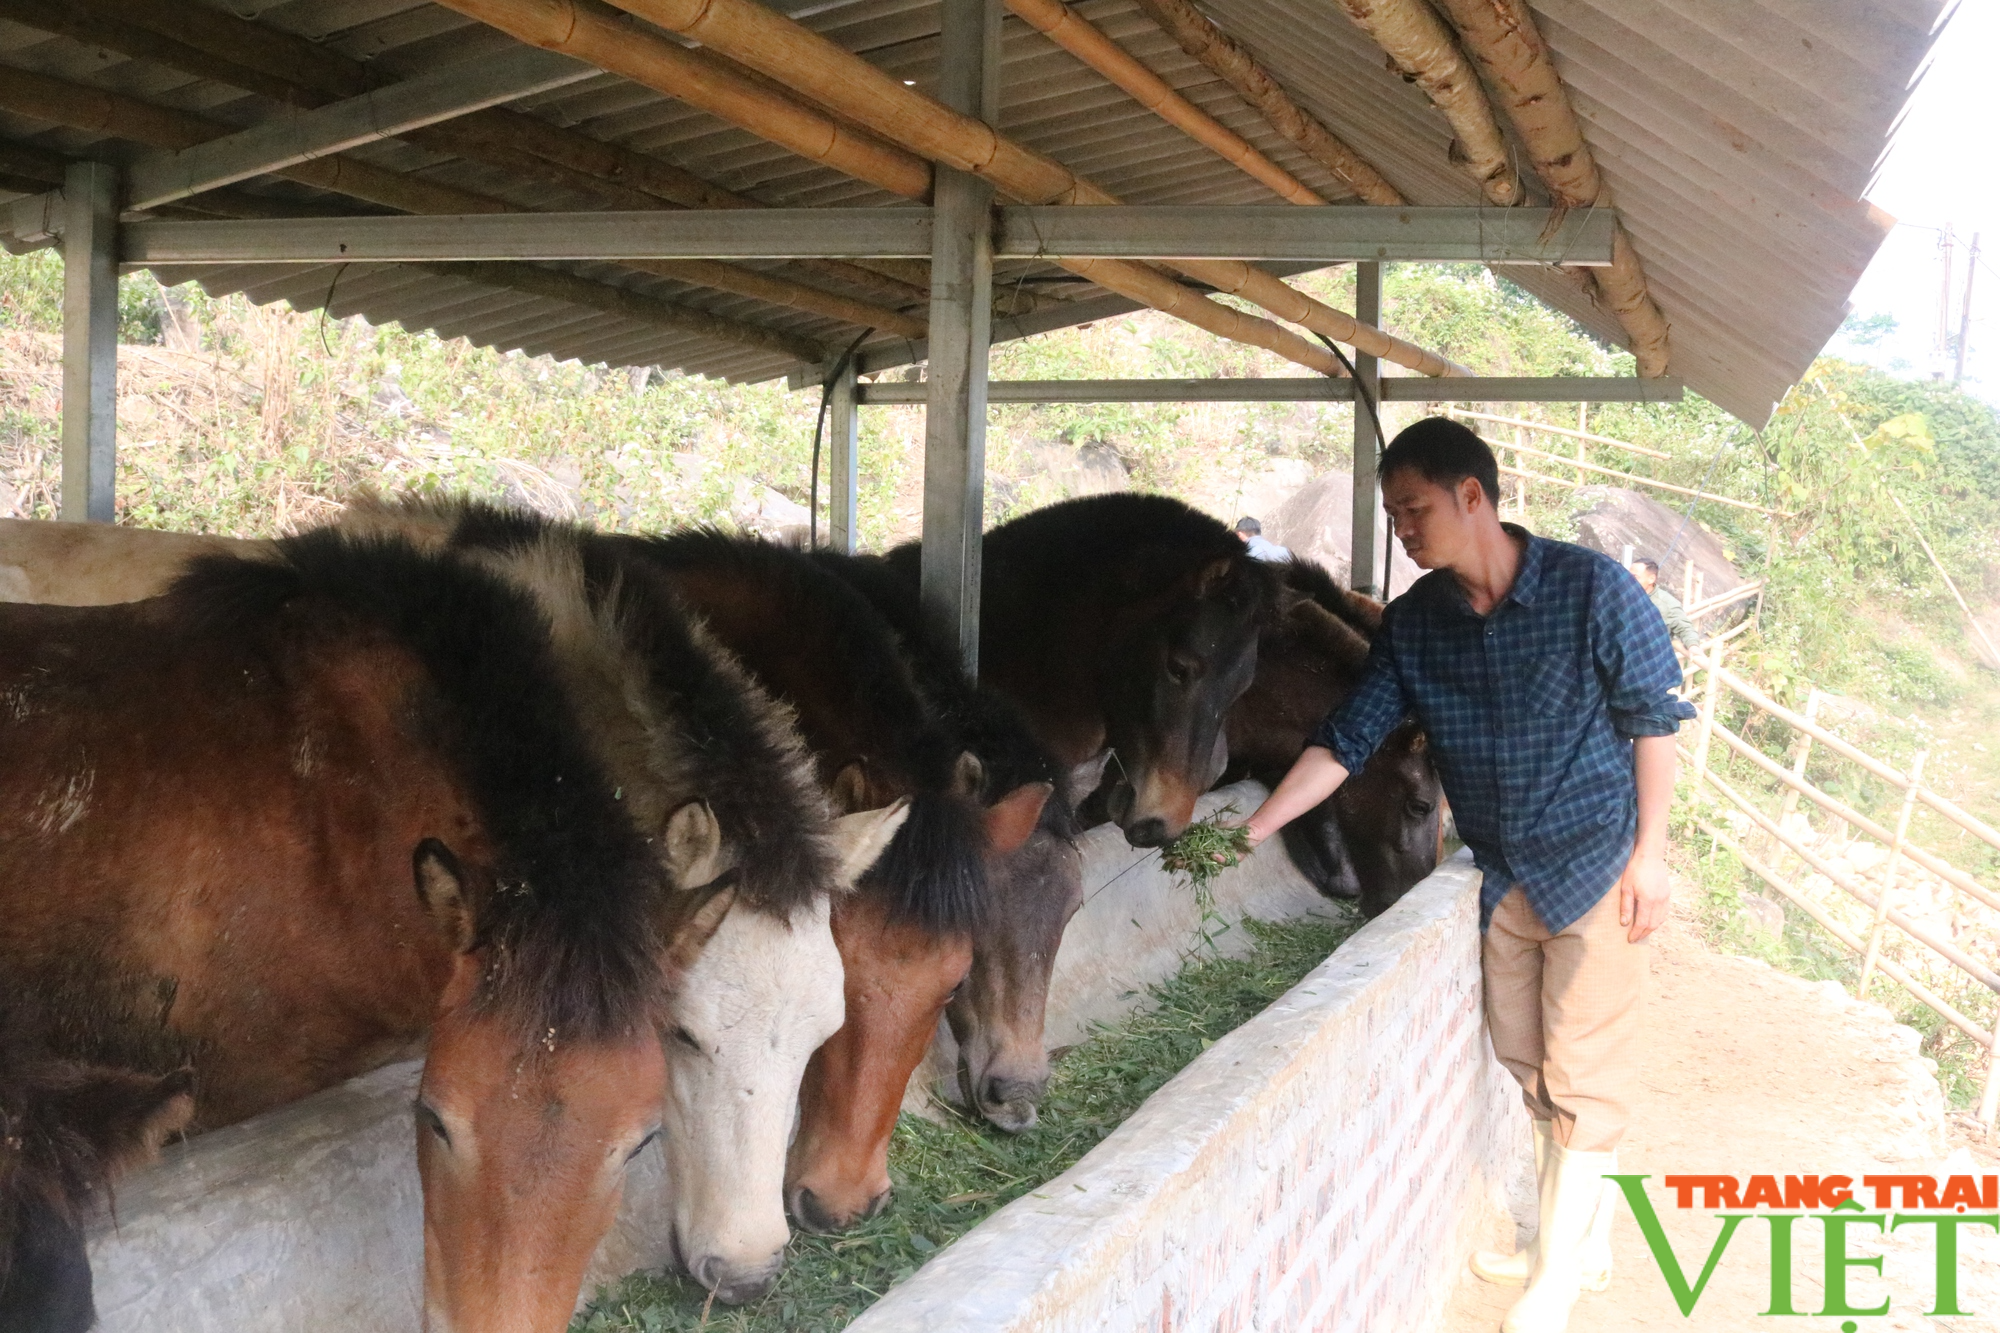  Một nông dân Lào Cai giàu lên nhờ nuôi ngựa theo hướng hàng hóa  - Ảnh 2.